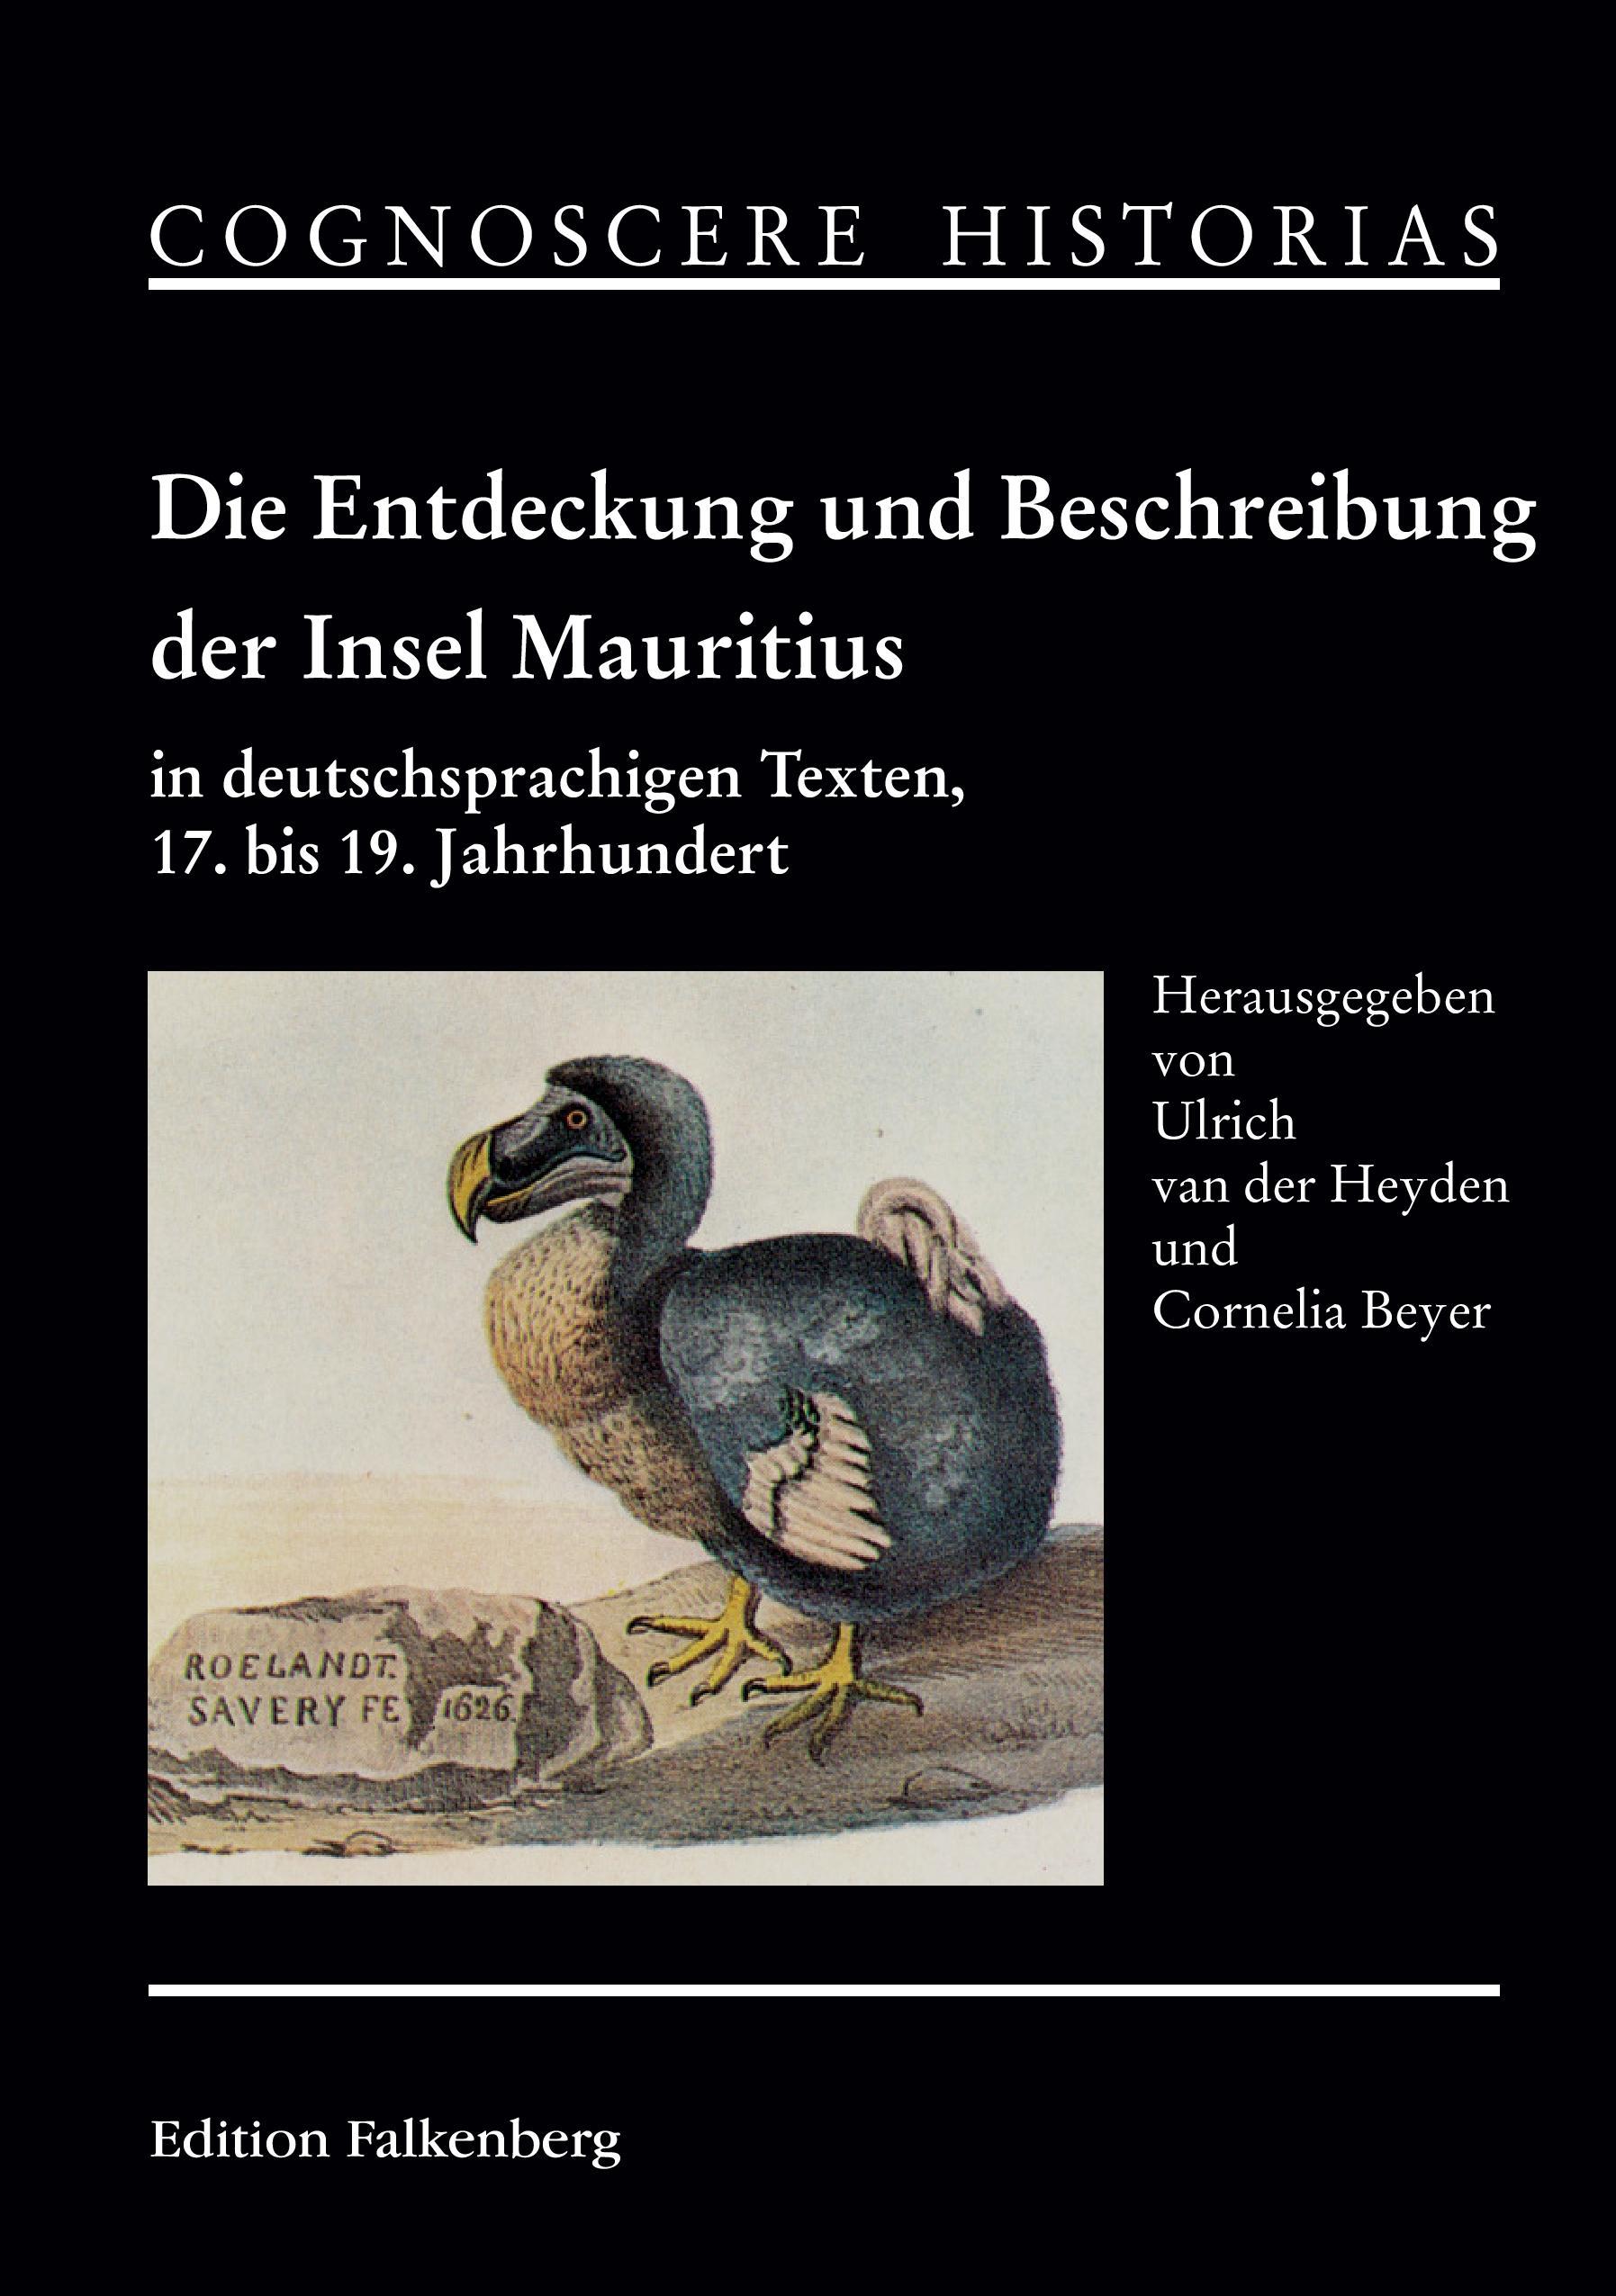 Die Entdeckung und Beschreibung der Insel Mauritius in deutschsprachigen Texten, 17. bis 19. Jahrhundert - Heyden, Ulrich van der|Beyer, Cornelia